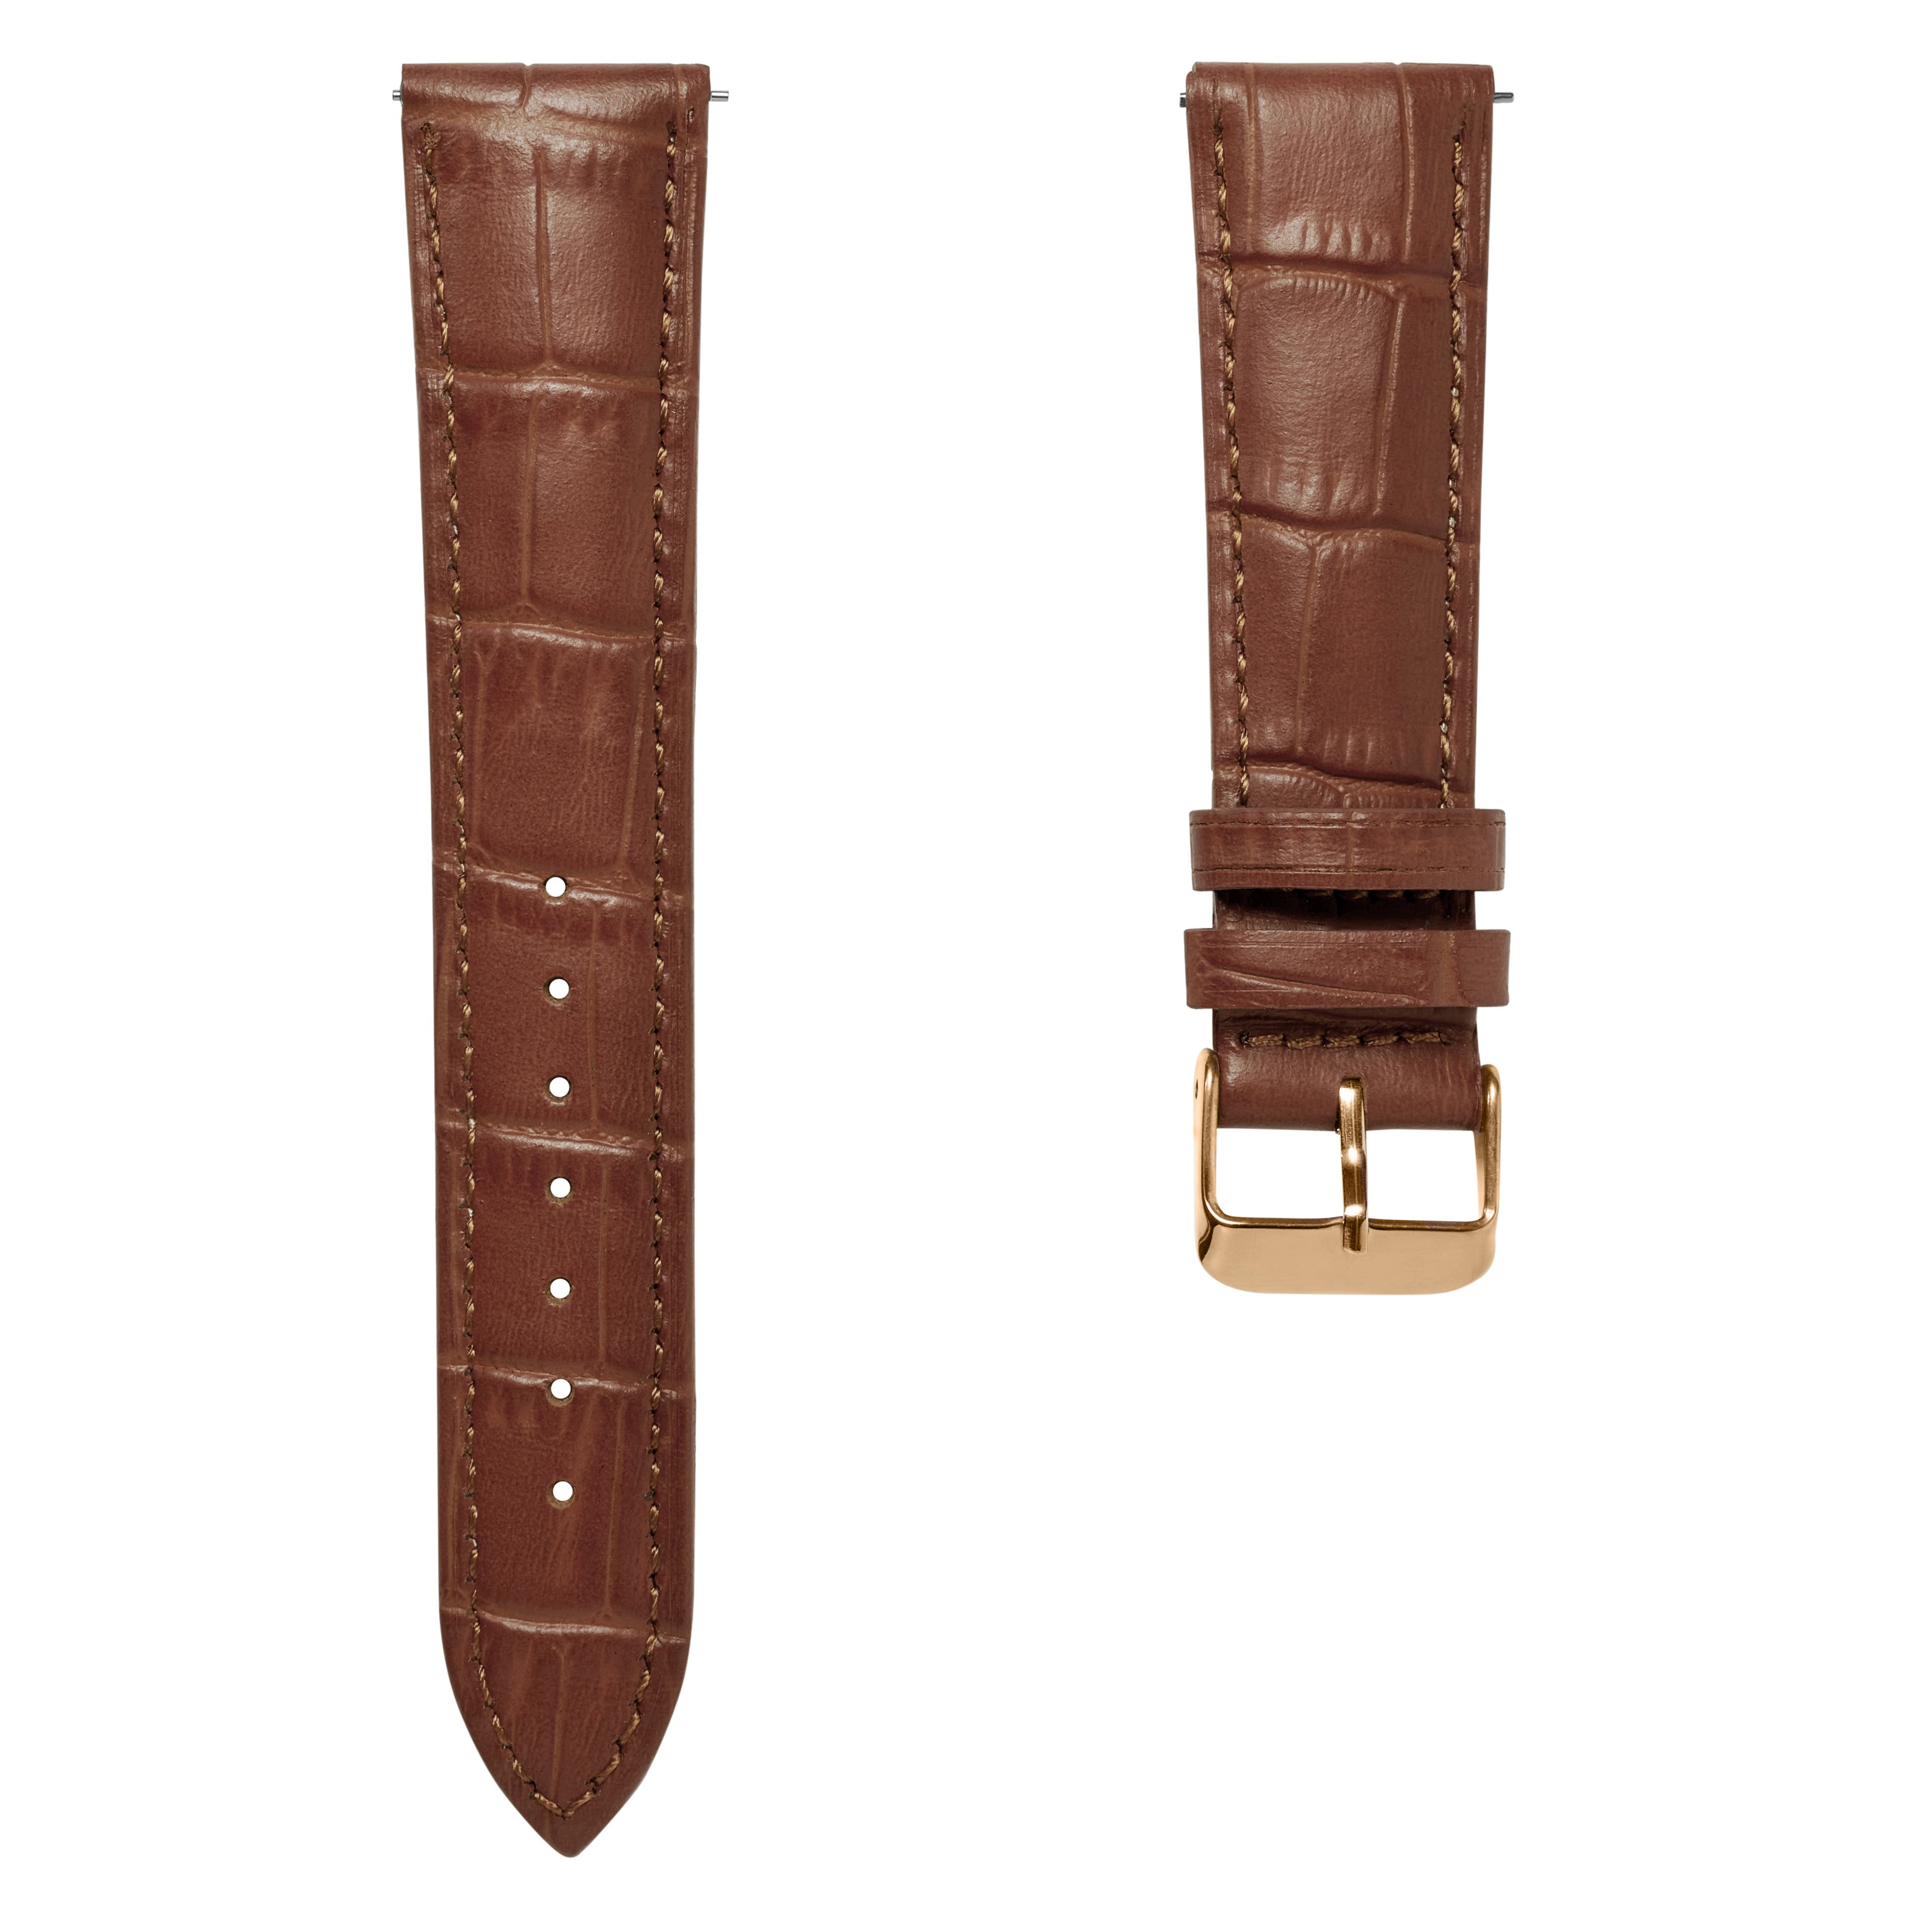 Bracelet de montre en cuir brun havane gaufré crocodile 21 mm avec boucle rose gold - Attache rapide